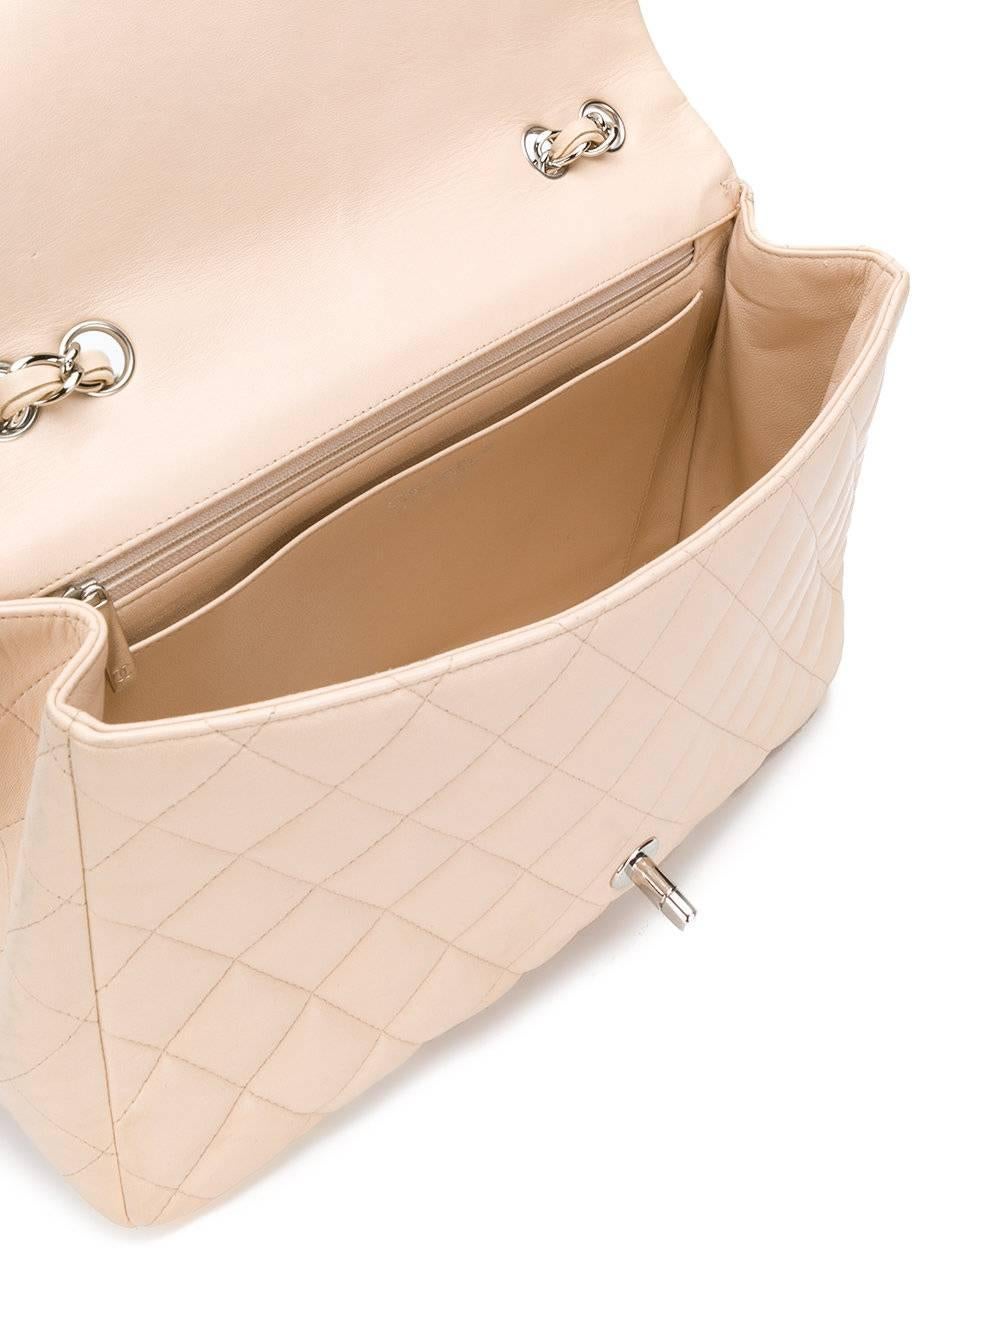 Beige Chanel Classic Flap Bag 